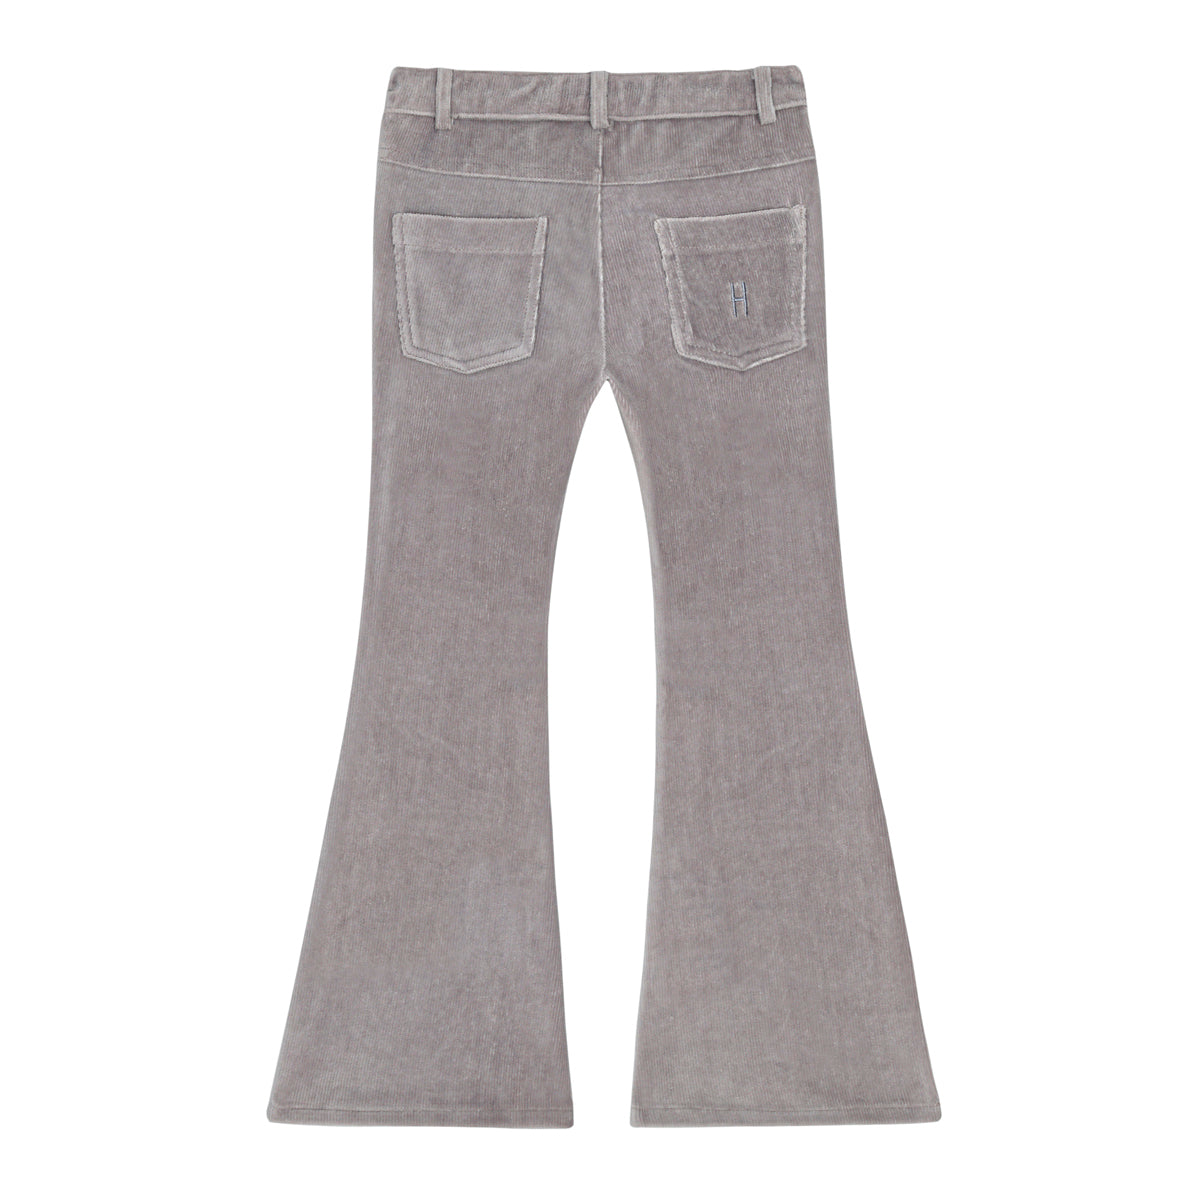 LITTLE HEDONIST - Pantalon neuf en velours côtelé gris - 2 ans